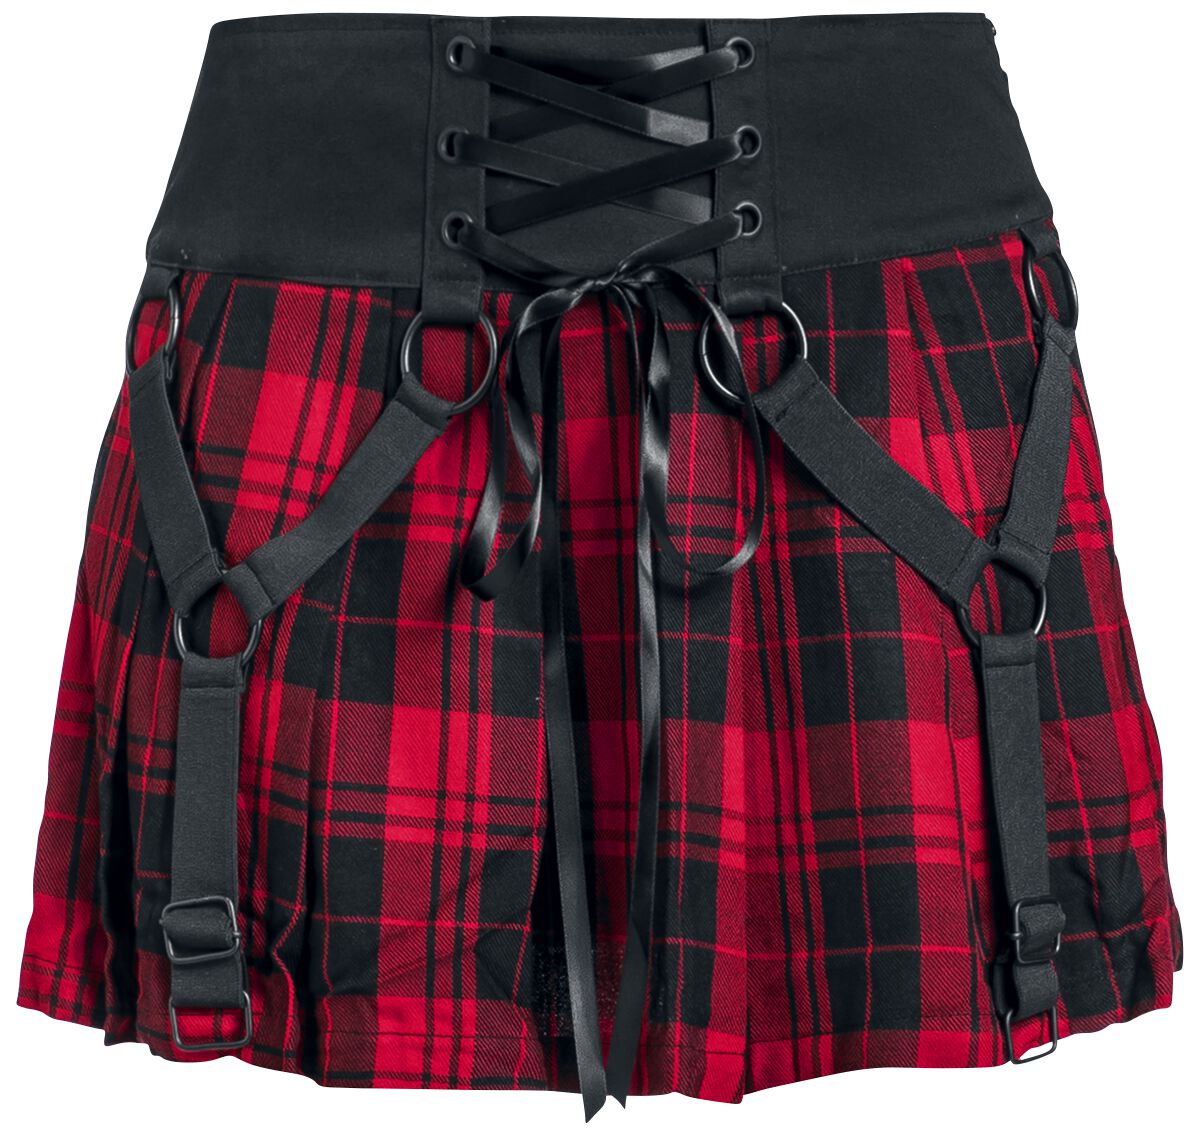 Heartless Kurzer Rock Hesper Skirt XS bis XL für Damen Größe M schwarz rot  - Onlineshop EMP